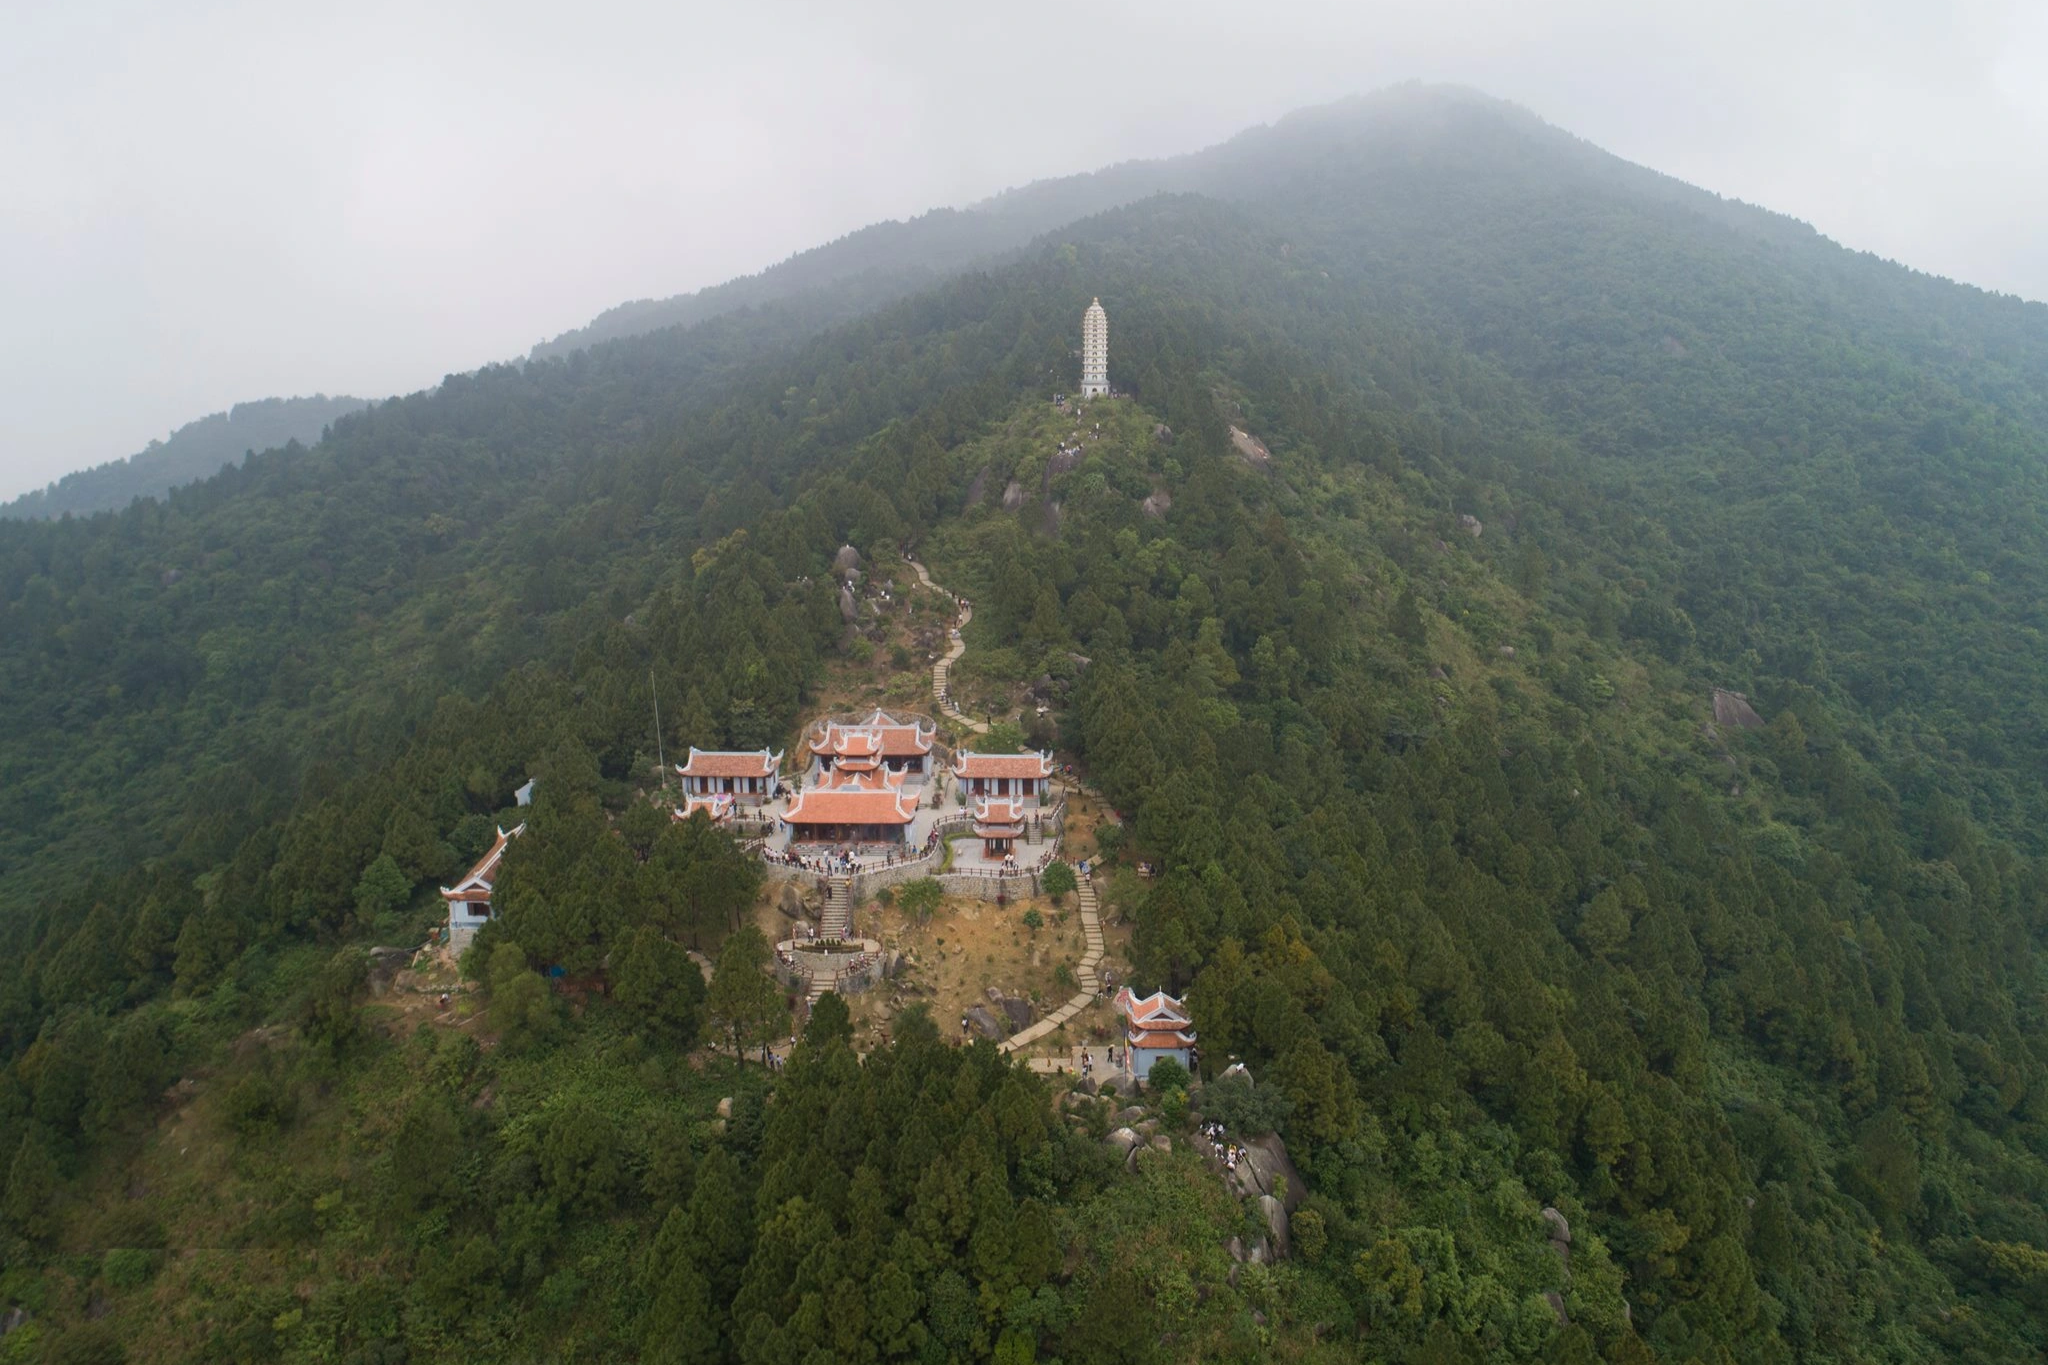 Du khách đội mưa lên ngôi chùa ở đỉnh đẹp nhất trong số 99 đỉnh núi Hồng - 1